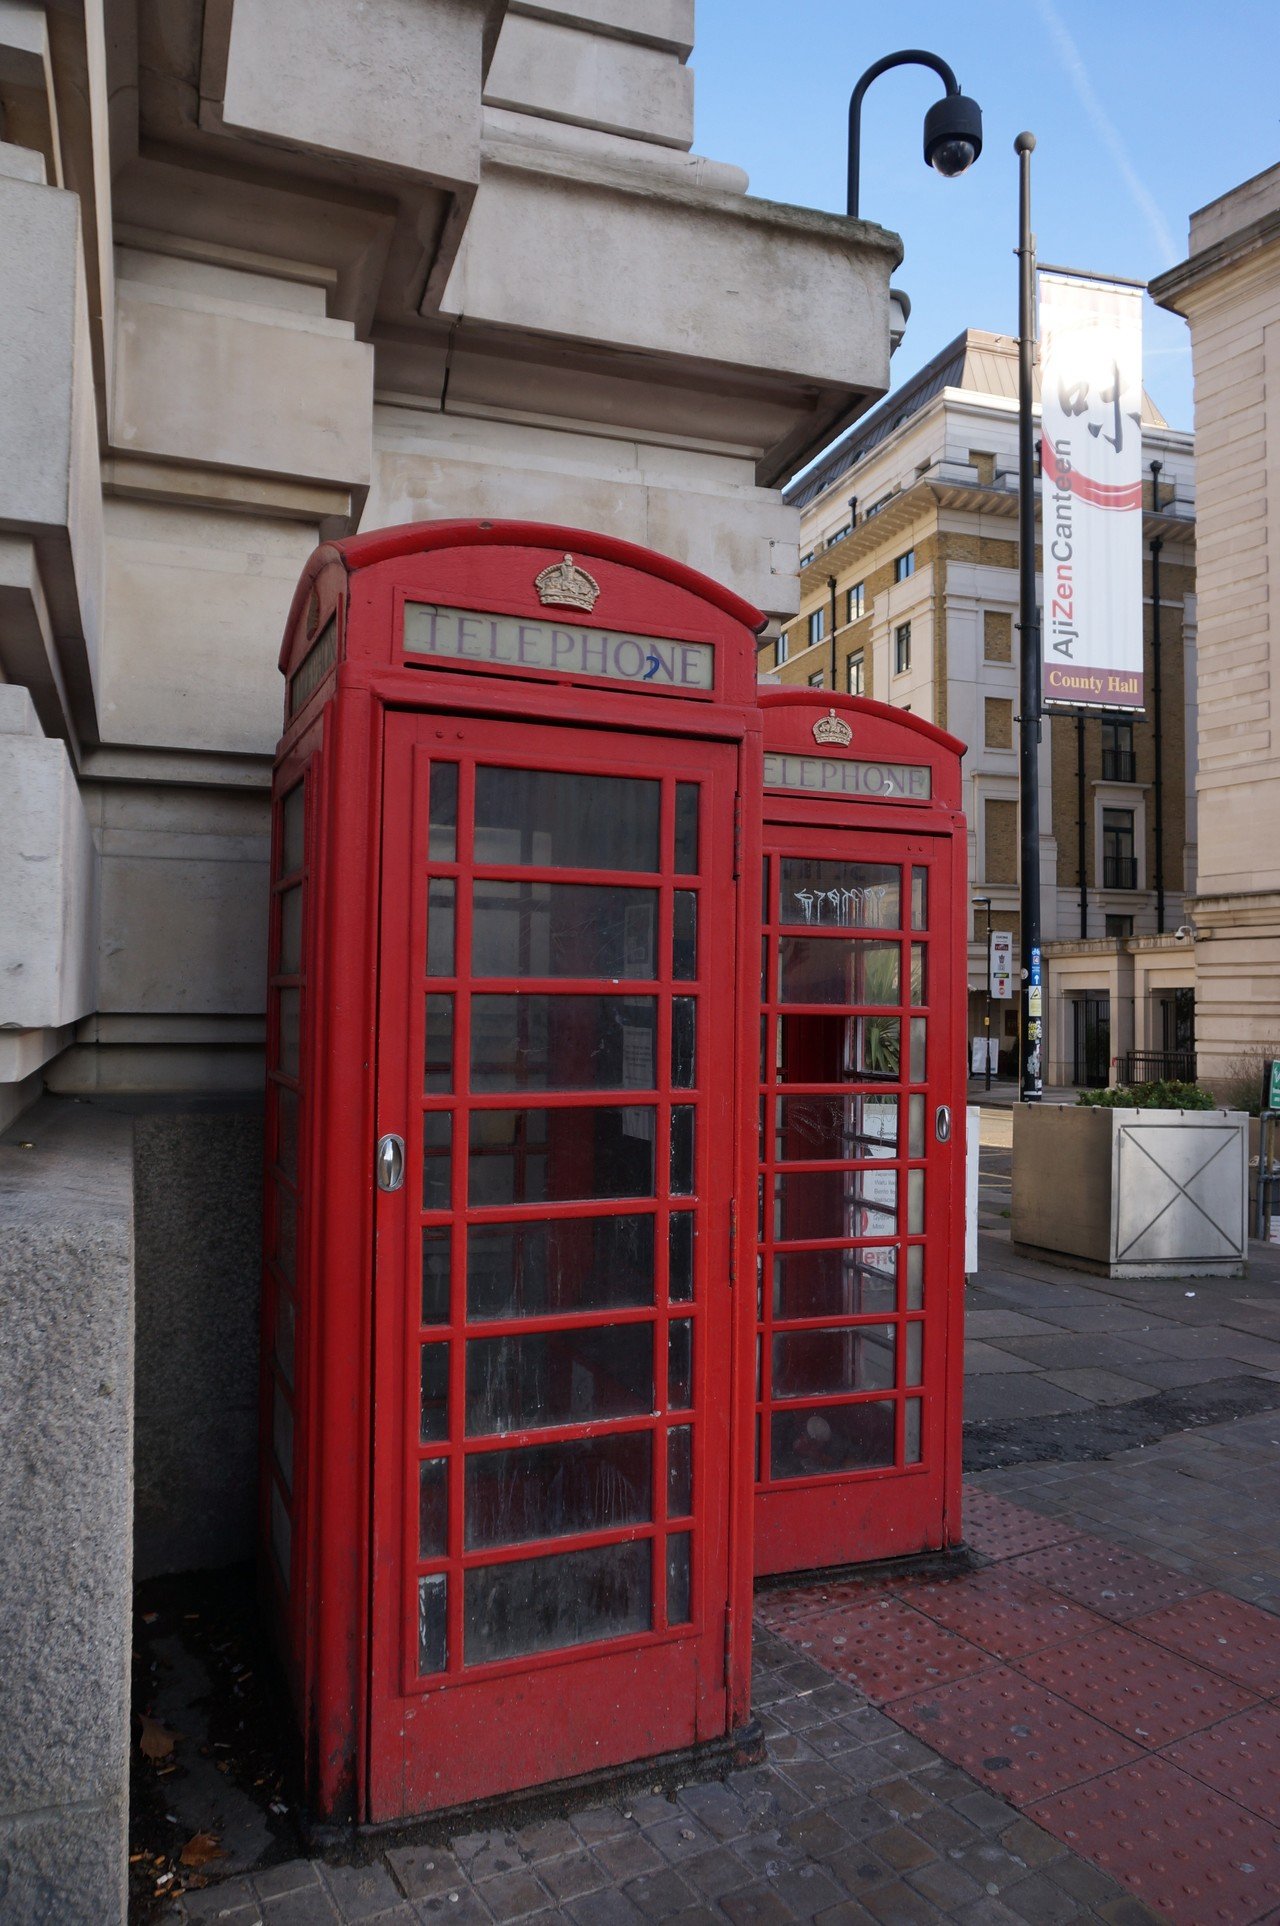 将来なくなってしまうかもしれないもの 公衆電話 ロンドン でも街のシンボルはなくならないでほしい 津島淳太郎 Note